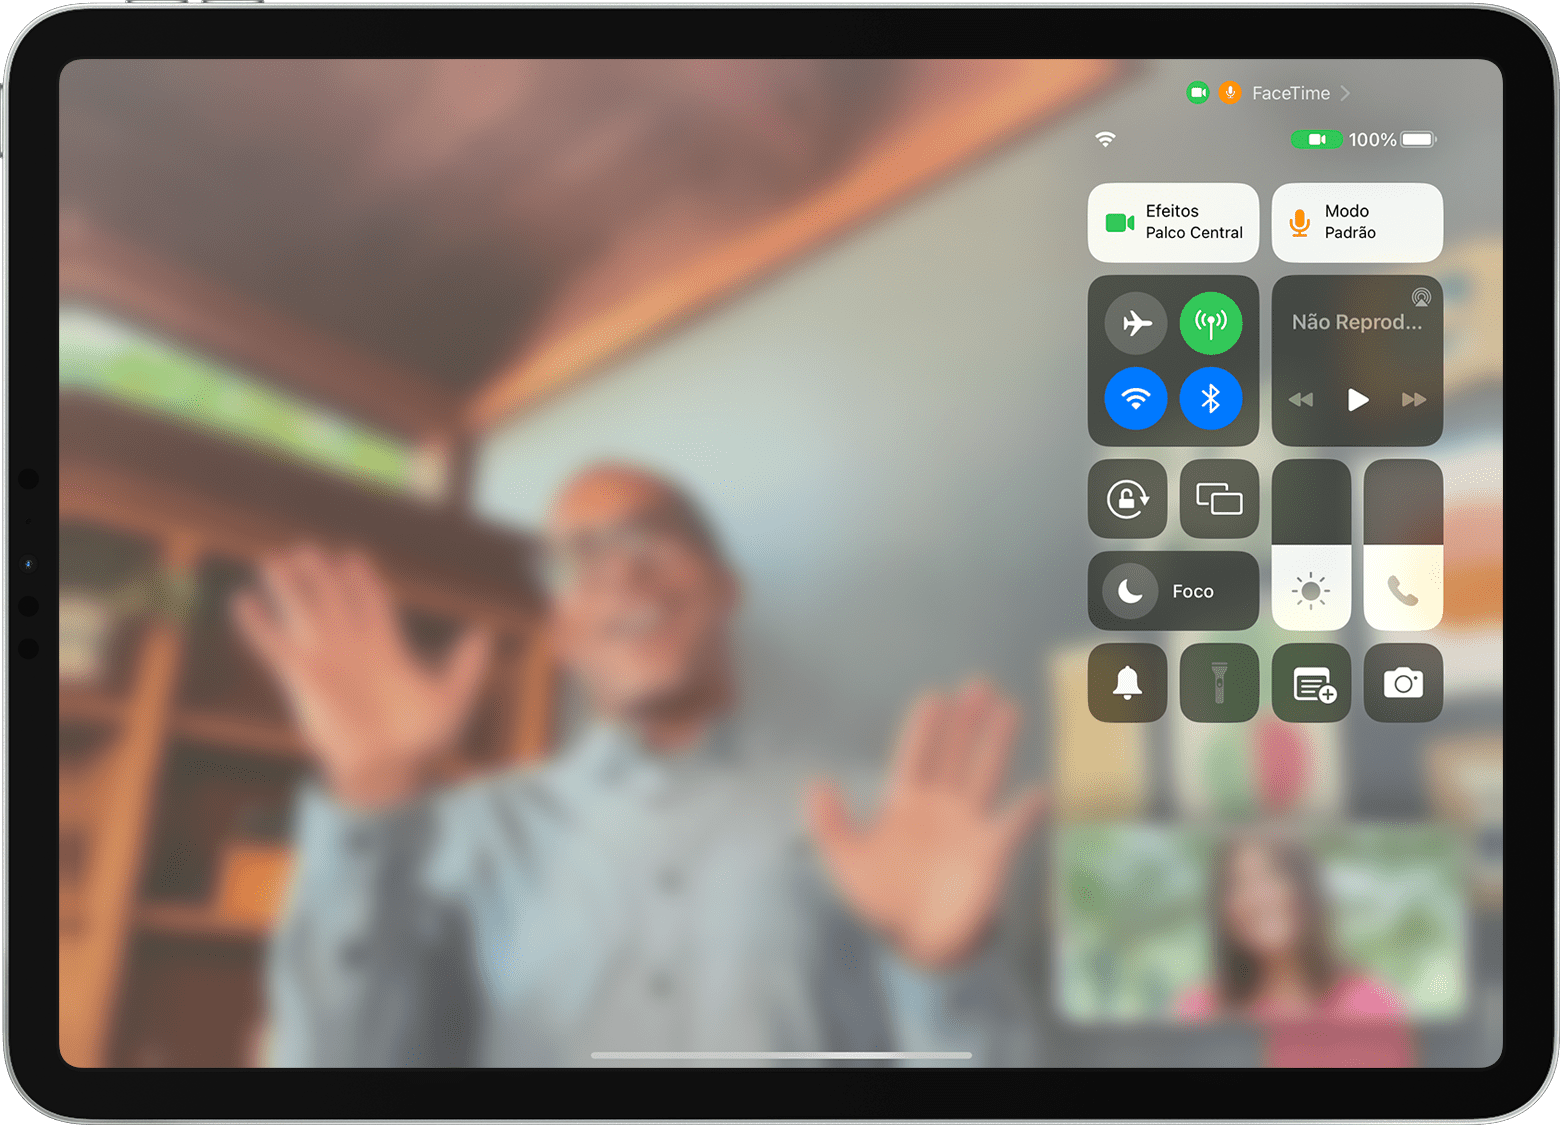 A tela do iPad mostra uma ligação do FaceTime com o Palco Central visível, incluindo o botão "Efeitos de Vídeo"